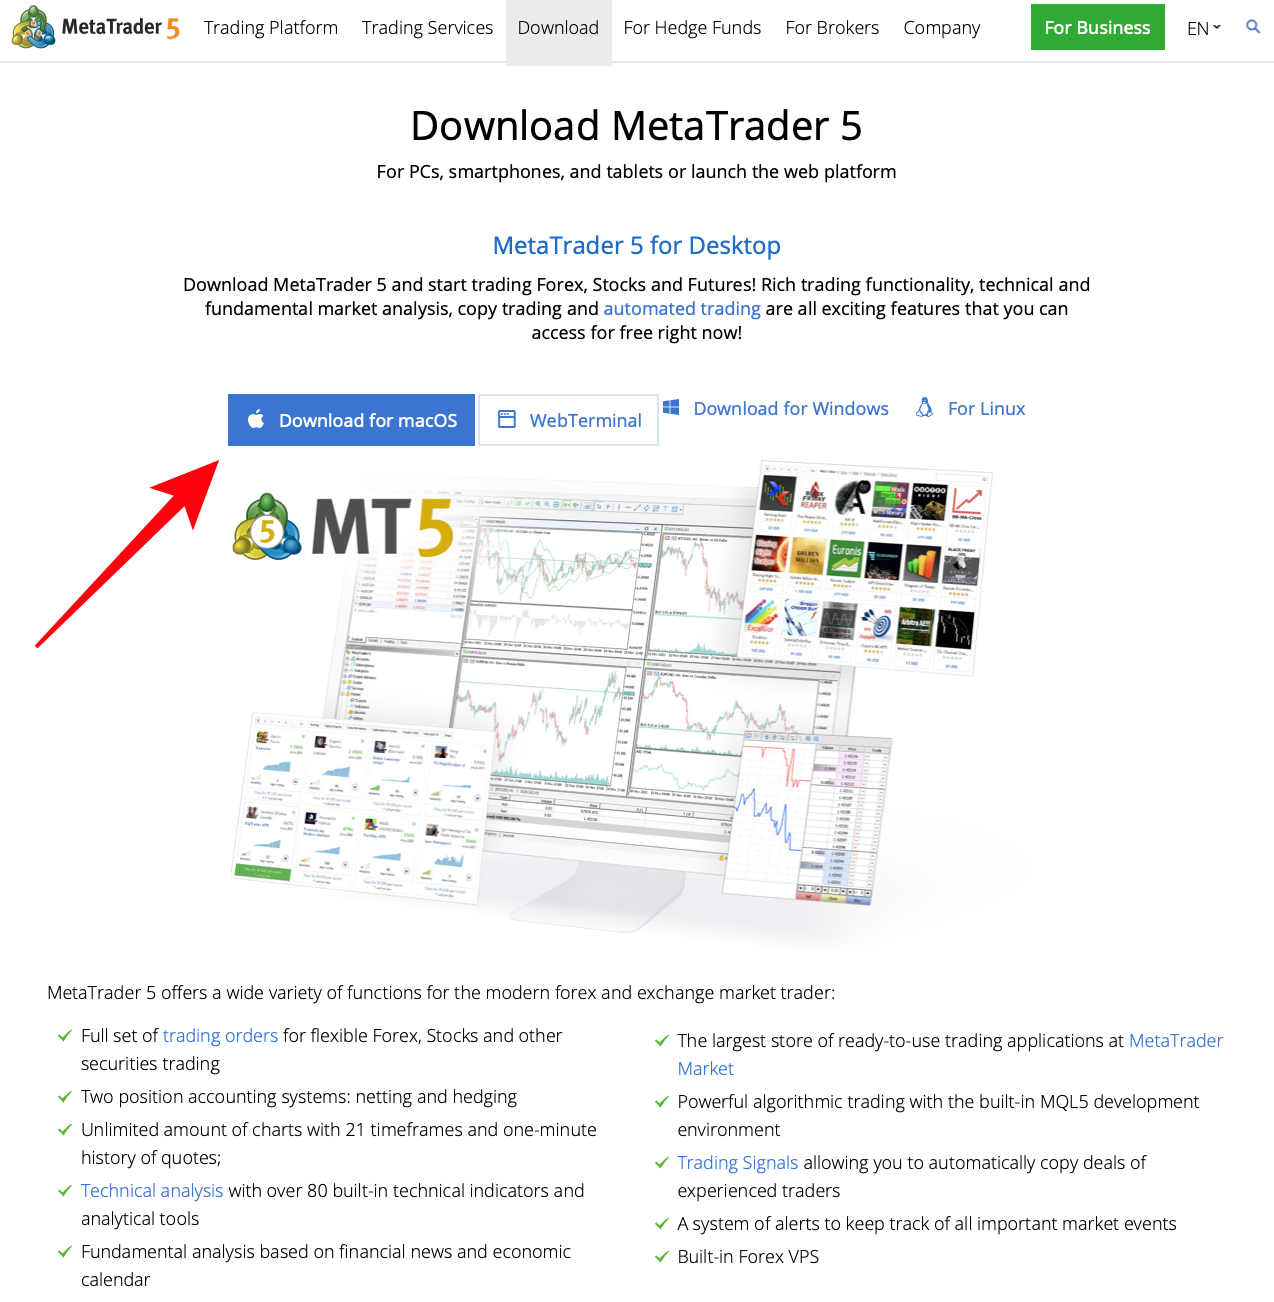 MetaTrader 5 ट्रेडिंग सॉफ्टवेयर को कैसे इंस्टॉल और डाउनलोड करें